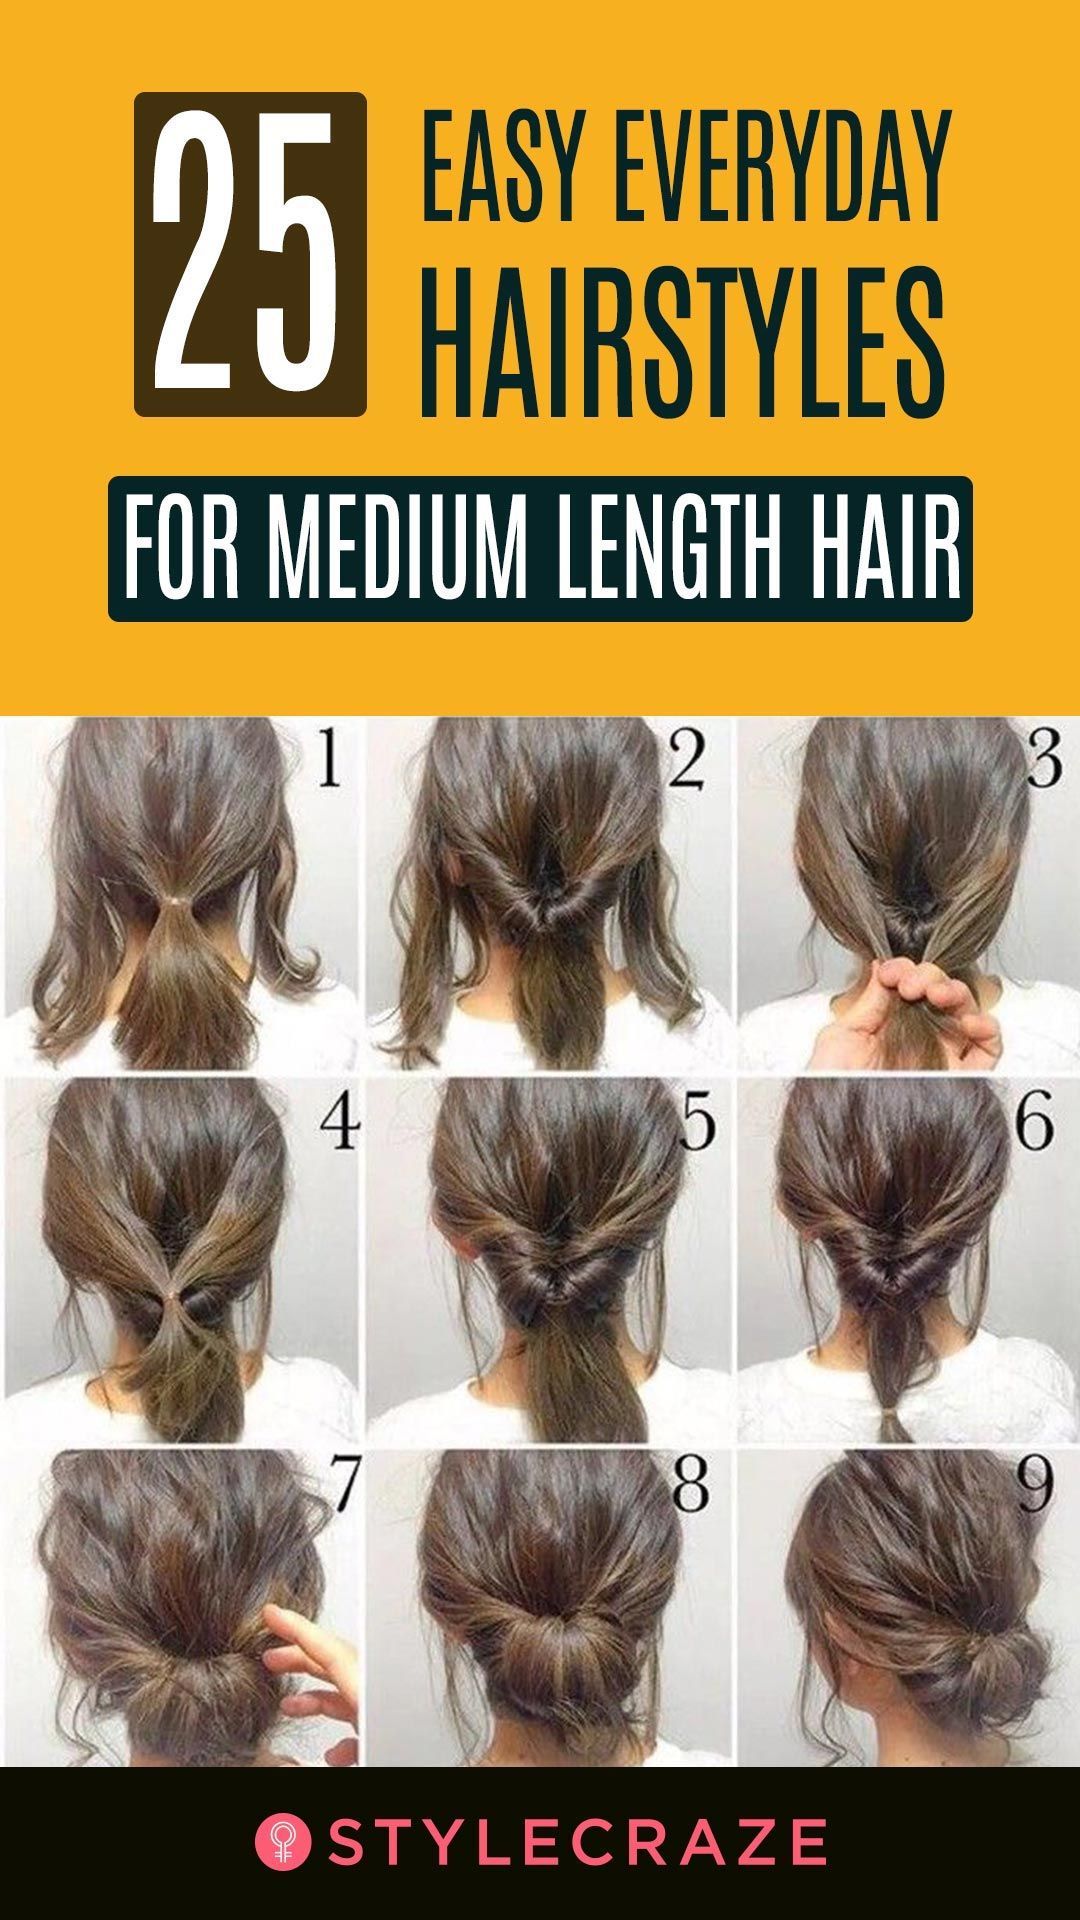 16 hairstyles For Medium Length Hair curly ideas